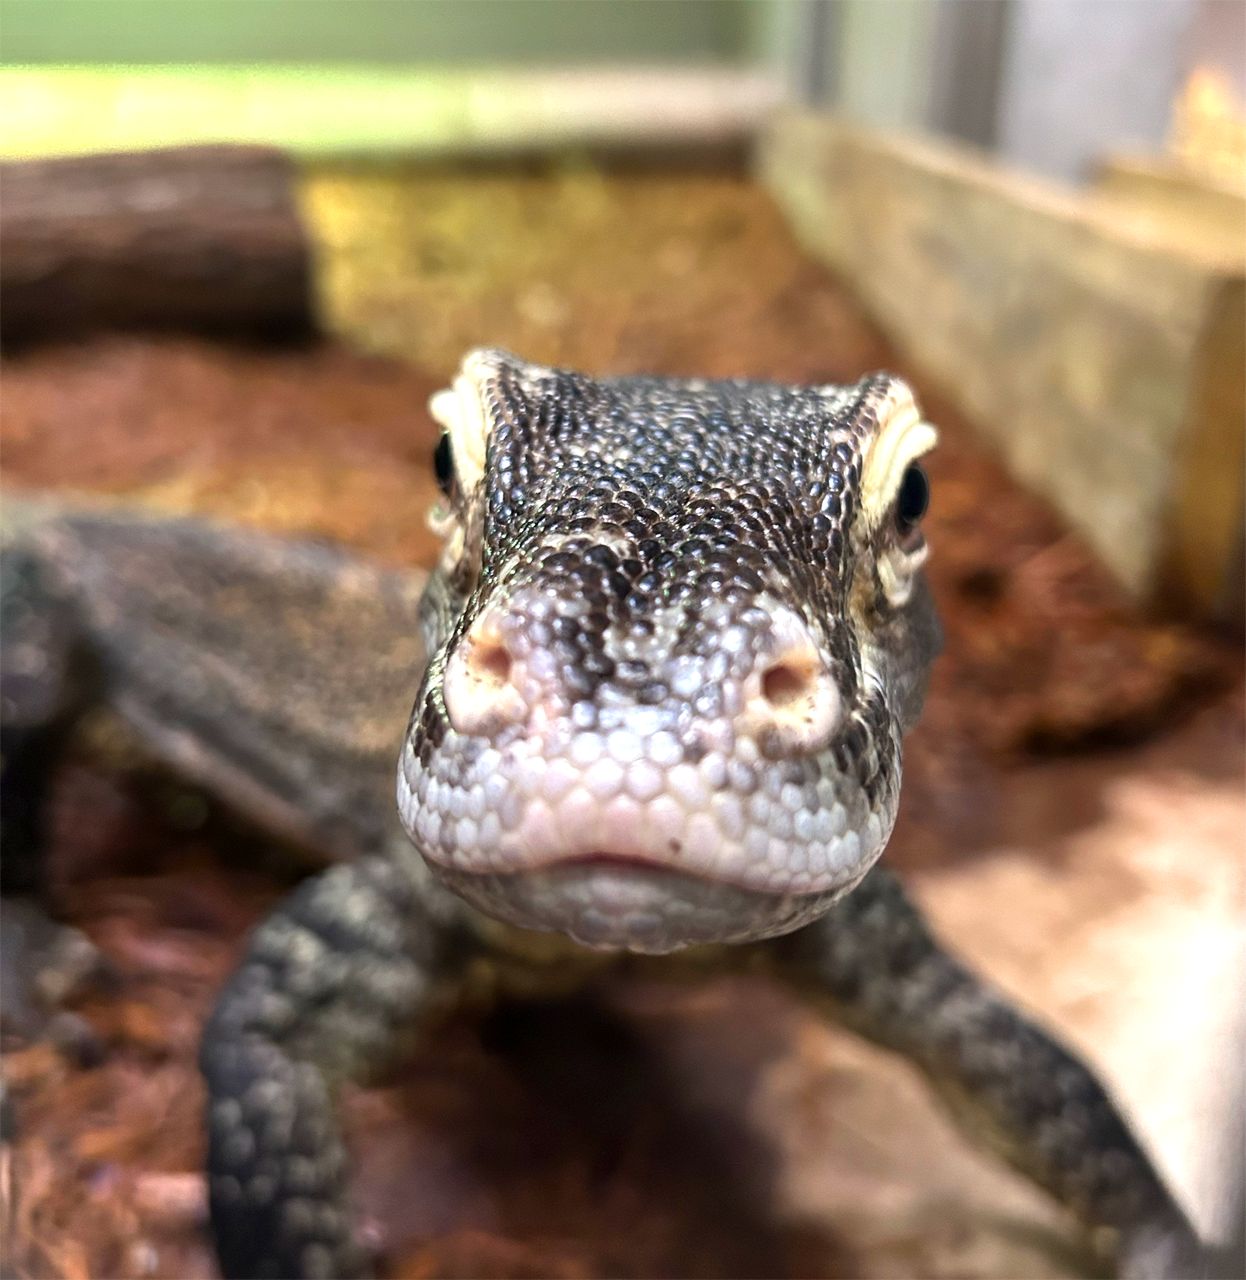 a lizard's face